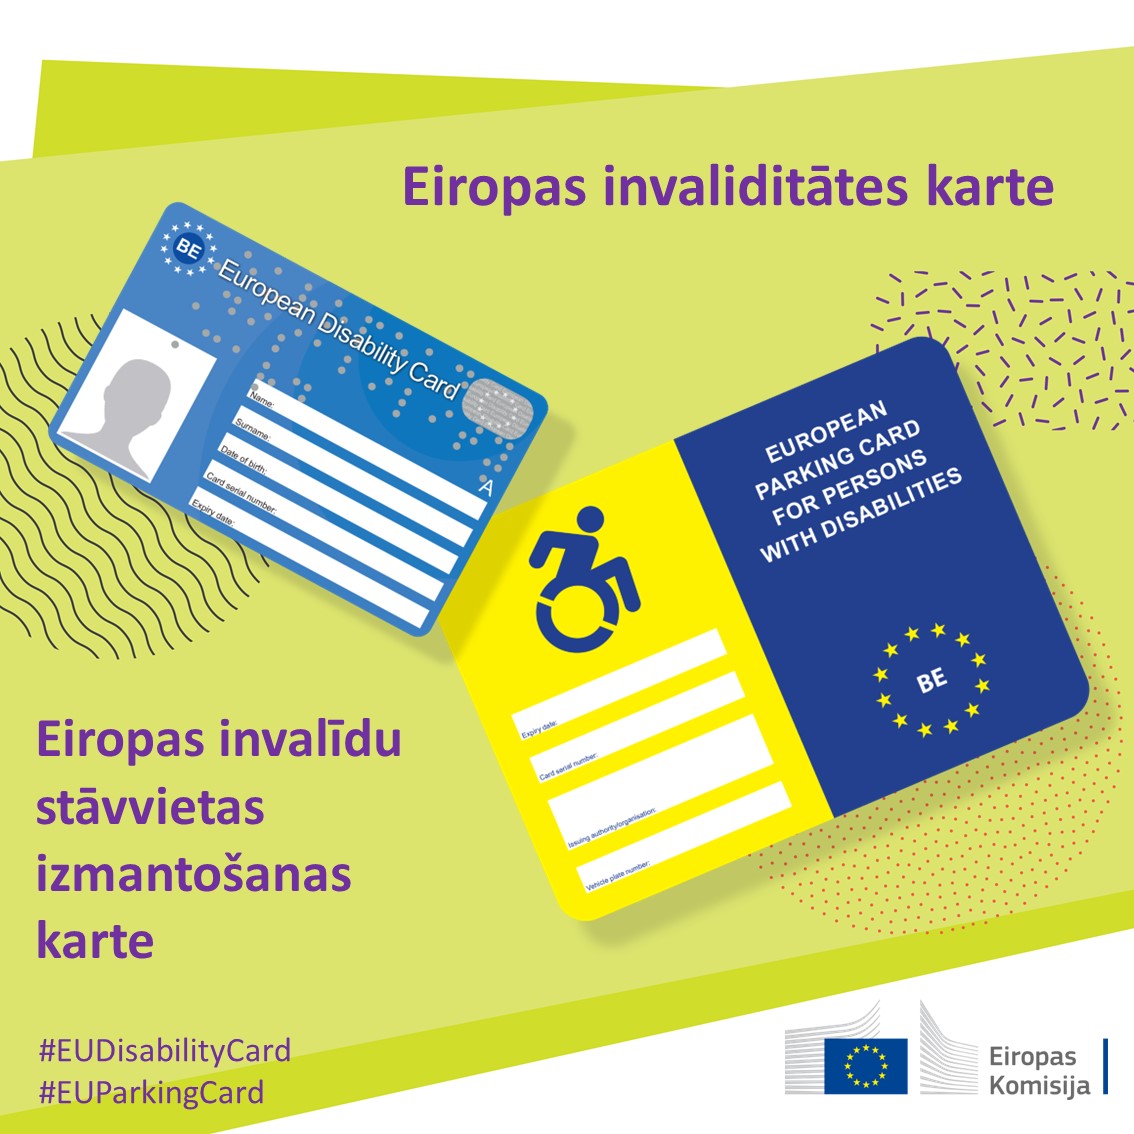 Valstu robežas nedrīkst traucēt personām ar invaliditāti izmantot savas tiesības.

Nākam klajā ar priekšlikumiem vienotai Eiropas invaliditātes kartei un izlabojumiem Eiropas invalīdu stāvvietu izmantošanas kartei.

📣 europa.eu/!tgfnvD

 #EUDisabilityCard #EUParkingCard